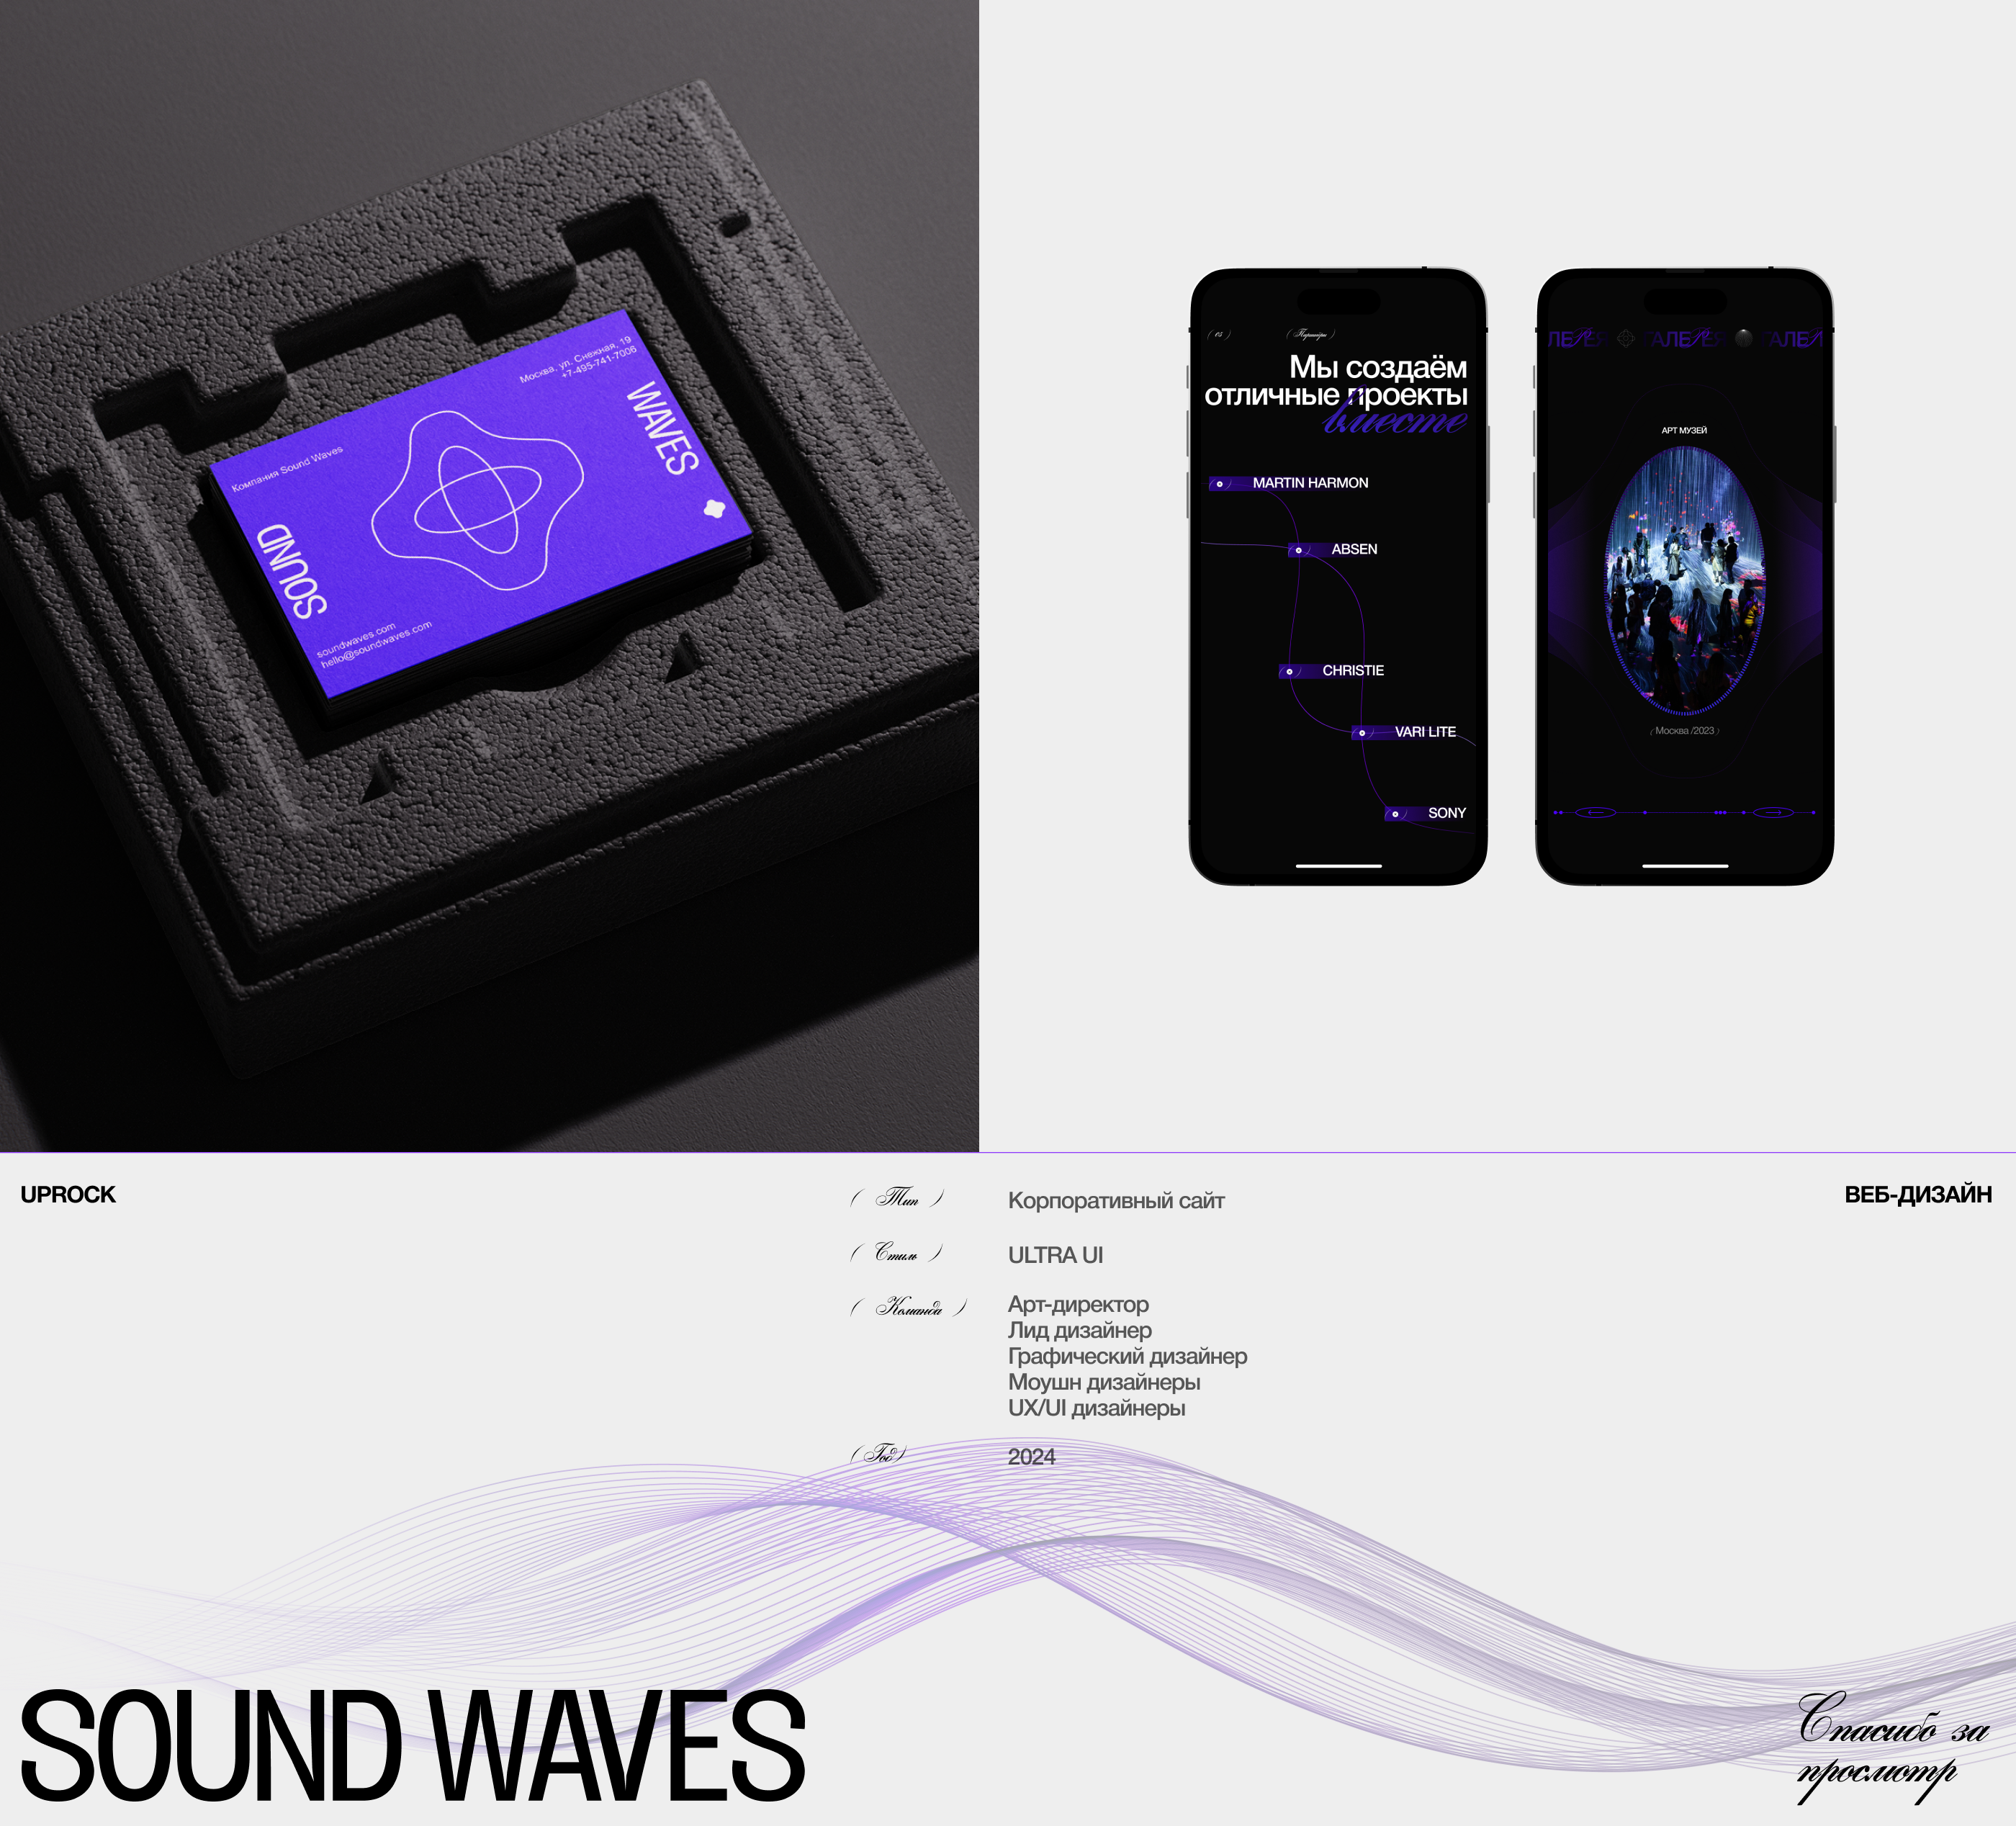 Sound Waves — Изображение №8 — Интерфейсы, Брендинг на Dprofile